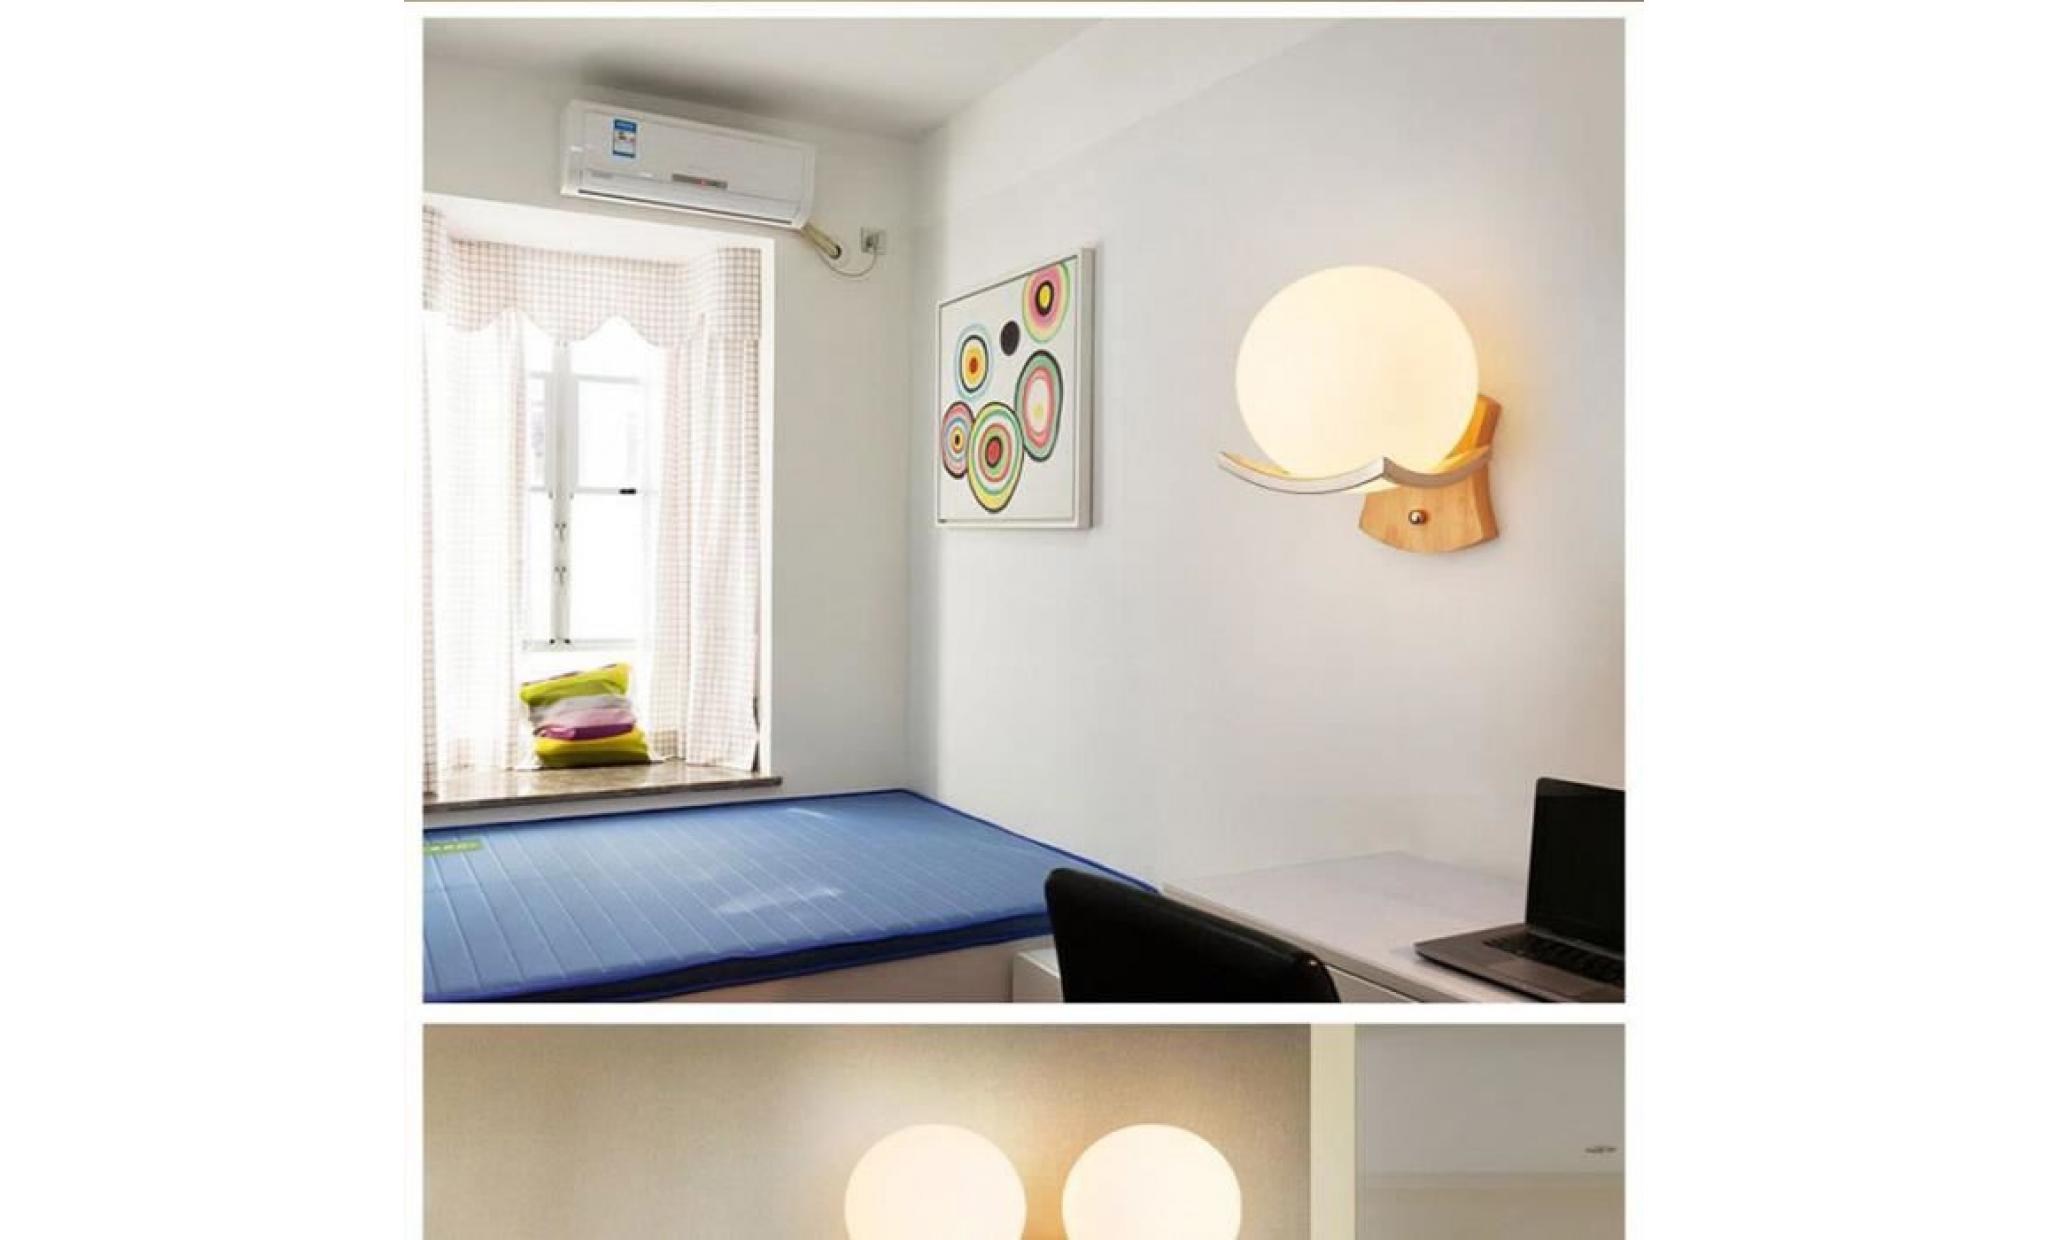 3w led applique lampe murale de boule en verre pour la simple bois massif créatif 220v pas cher